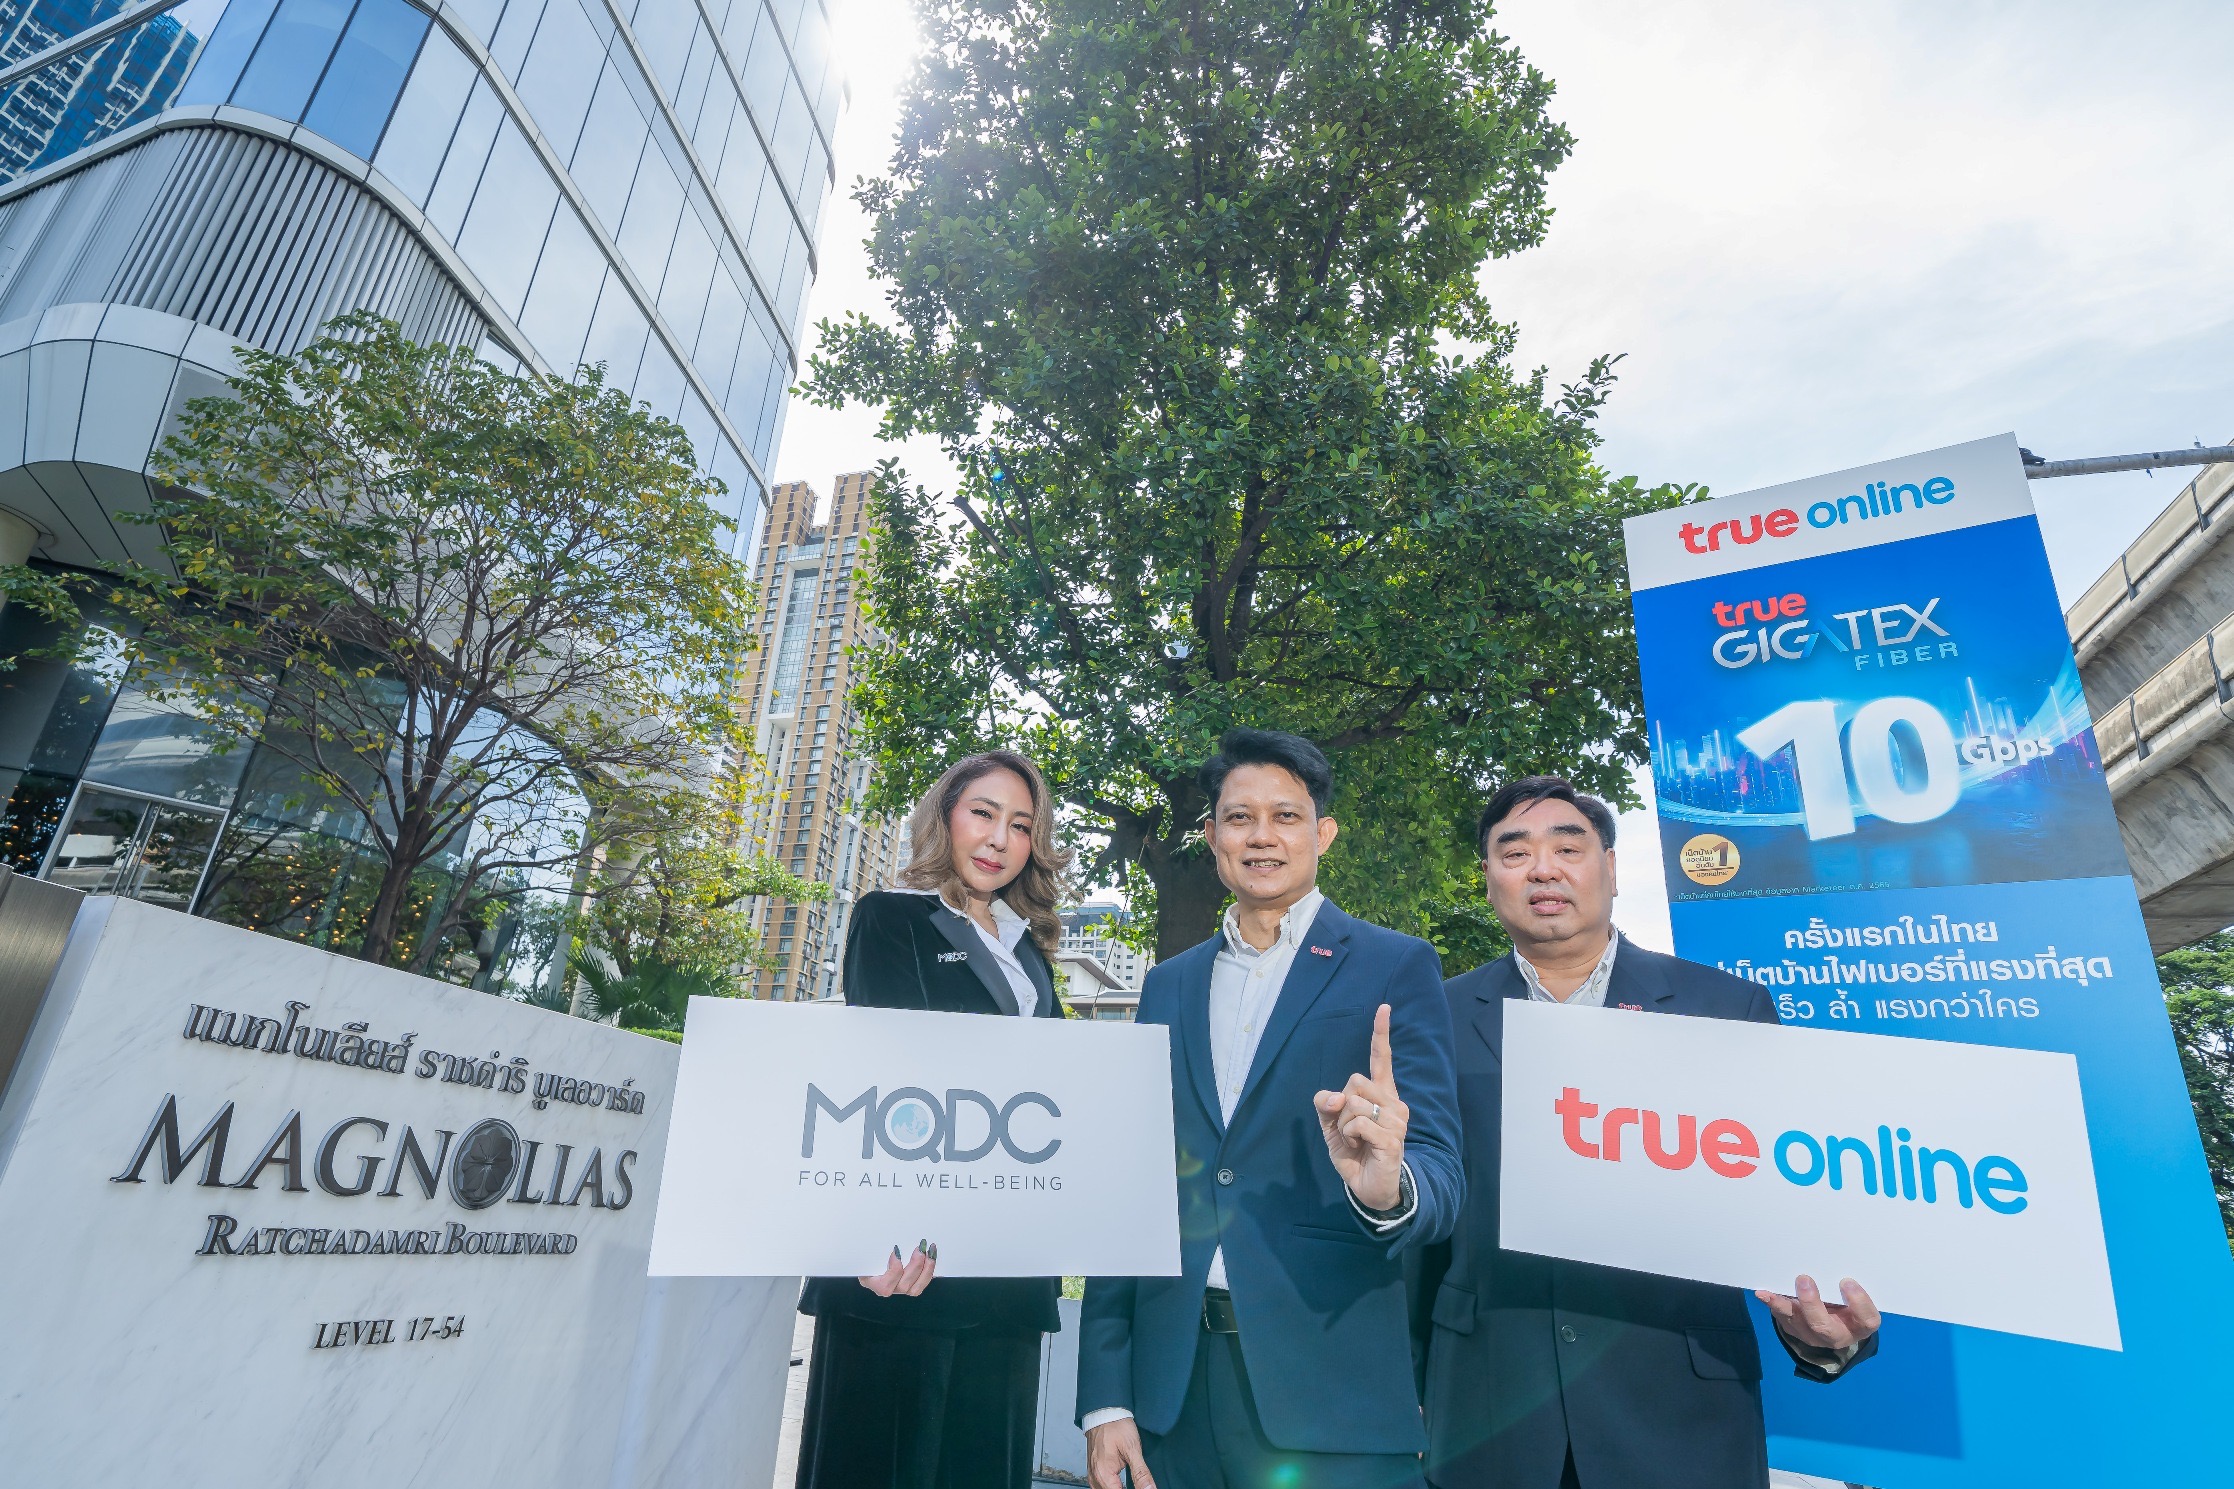 ทรูออนไลน์ ครั้งแรกในไทย นำร่องร่วมกับ แมกโนเลียส์ ราชดำริ บูเลอวาร์ด ส่งแพ็กเกจ True Gigatex Premium 10 Gbps.  ดูแลภายใน 12 ชม.